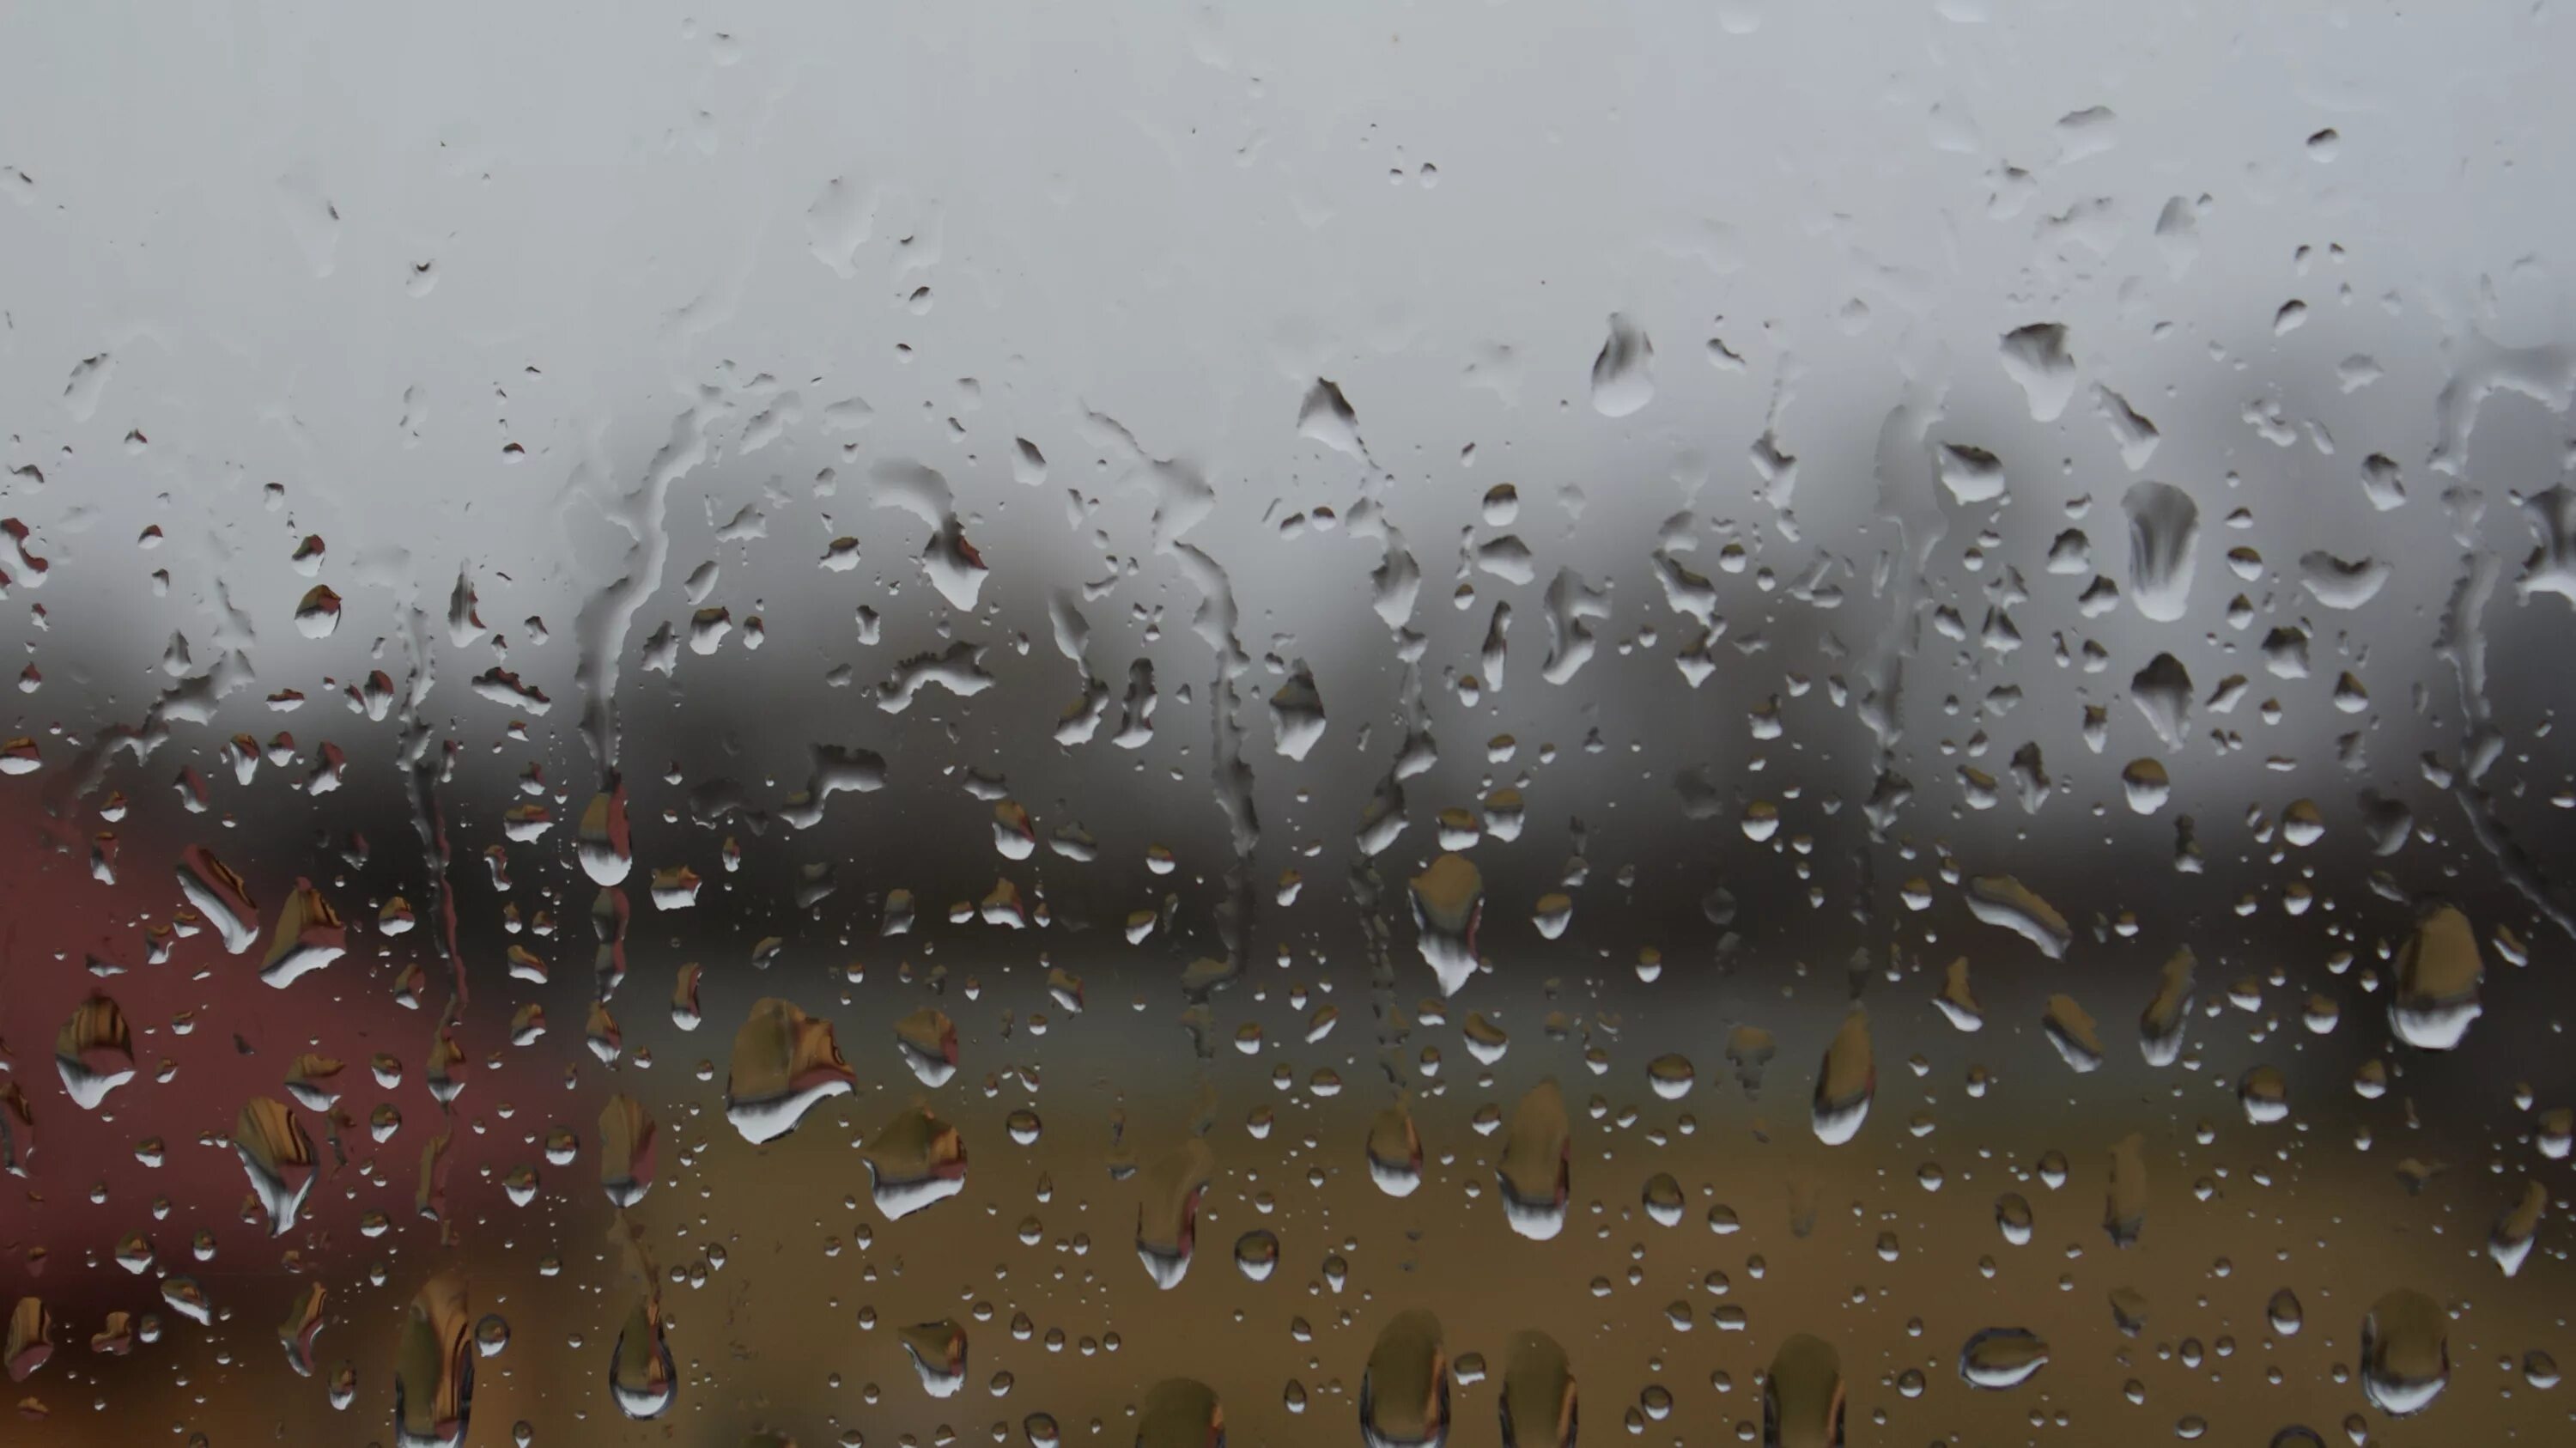 Капли на стекле. Обои дождь. Капли дождя на окне. Фон капли на стекле. В окна стучали крупные дождевые капли